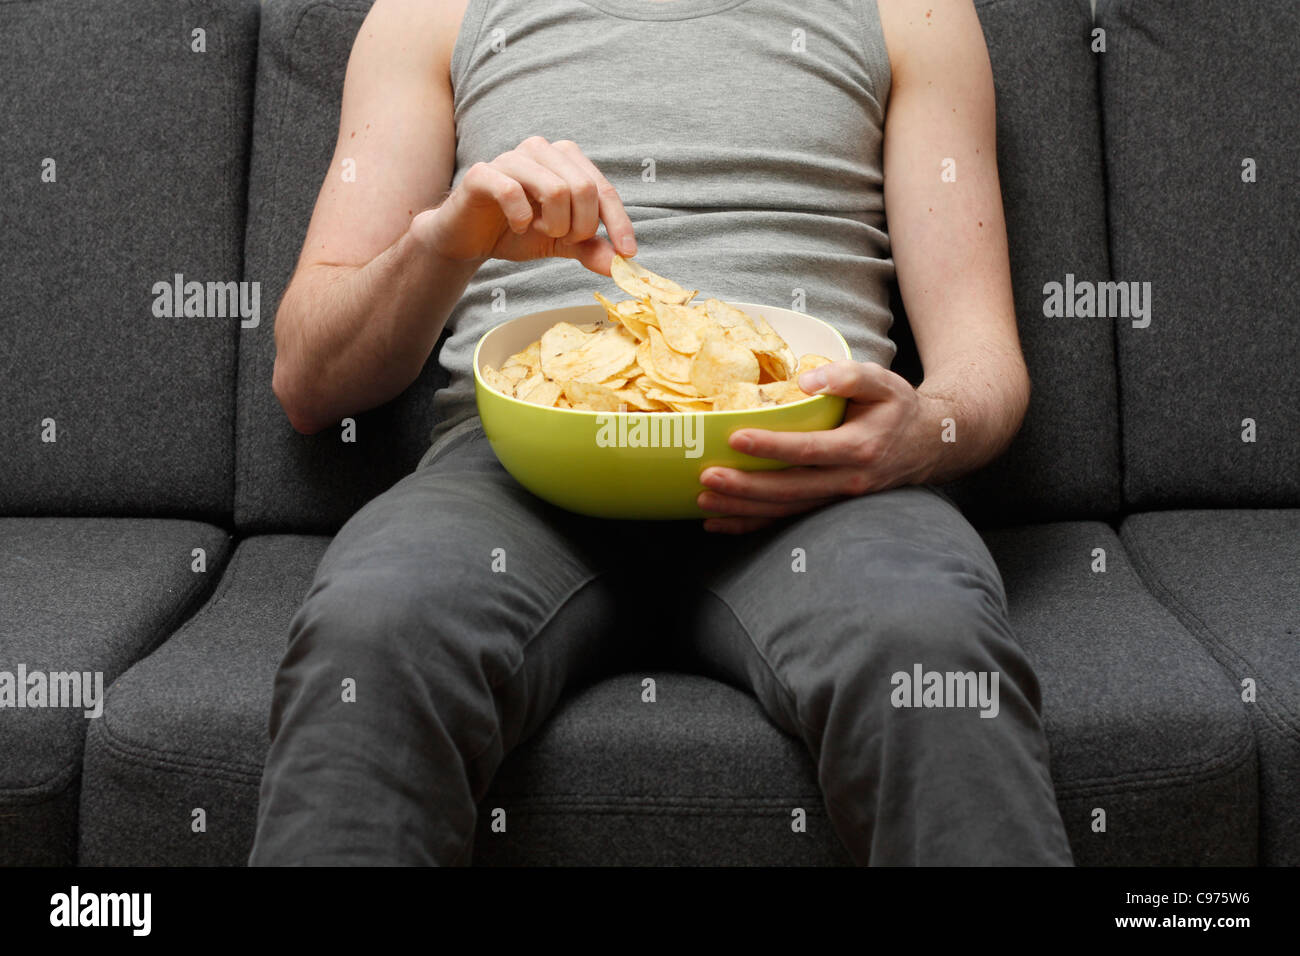 Ein Mann auf einer Couch Potato Chips Essen Stockfoto